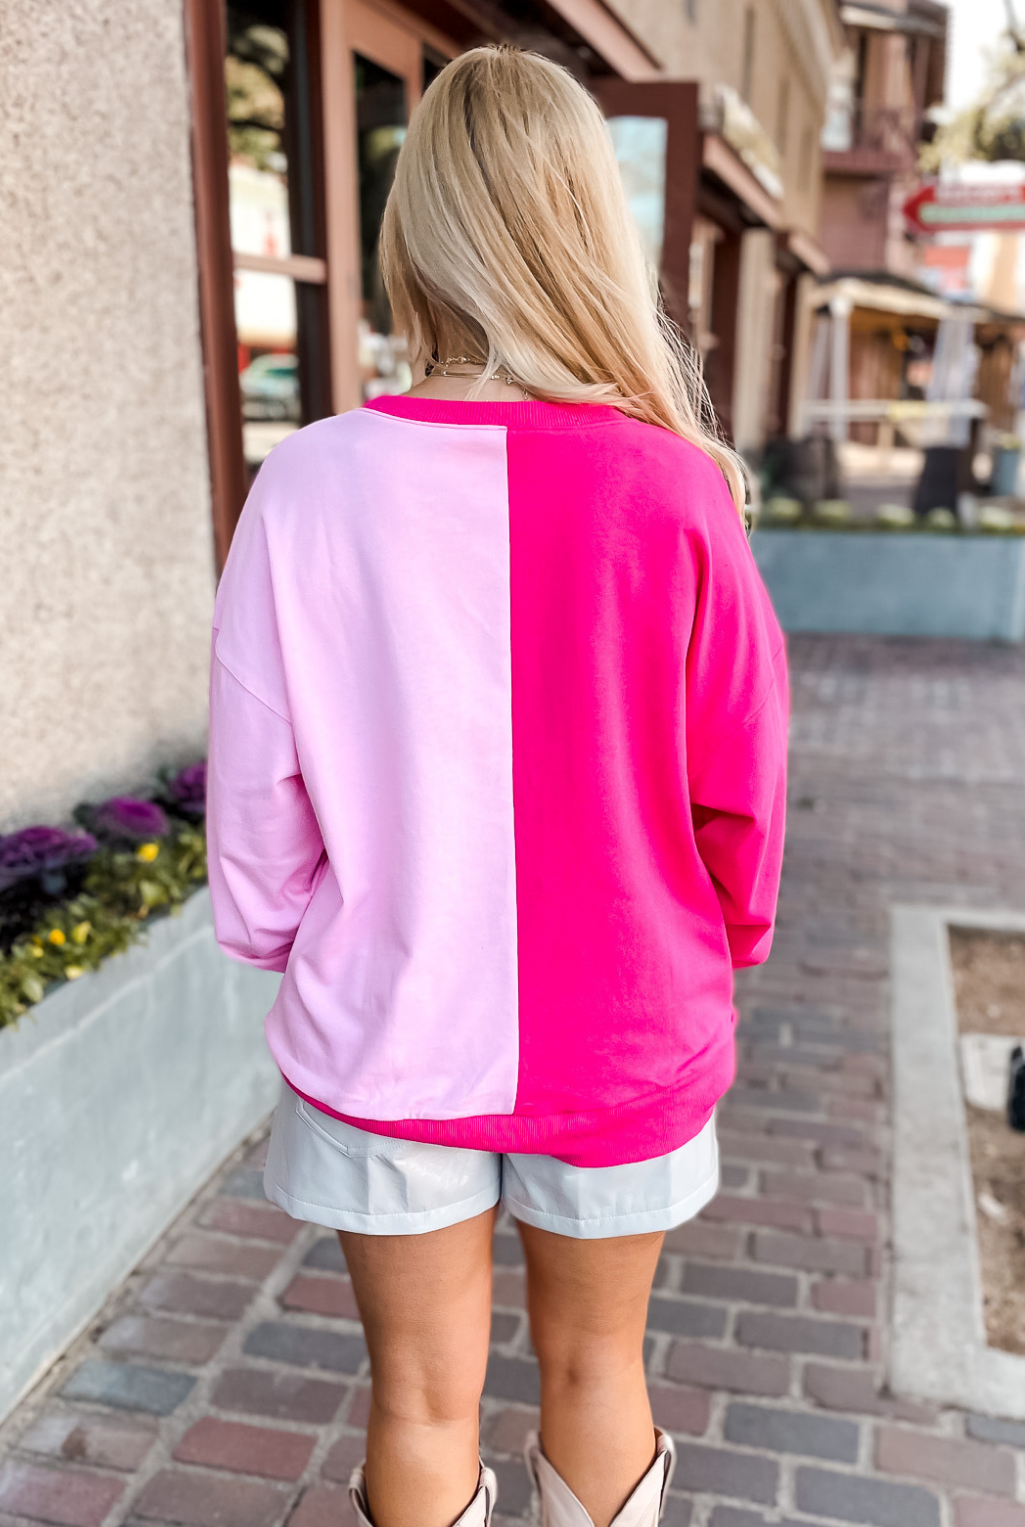 Sequin Pair Of Boots Sweatshirt - Pink